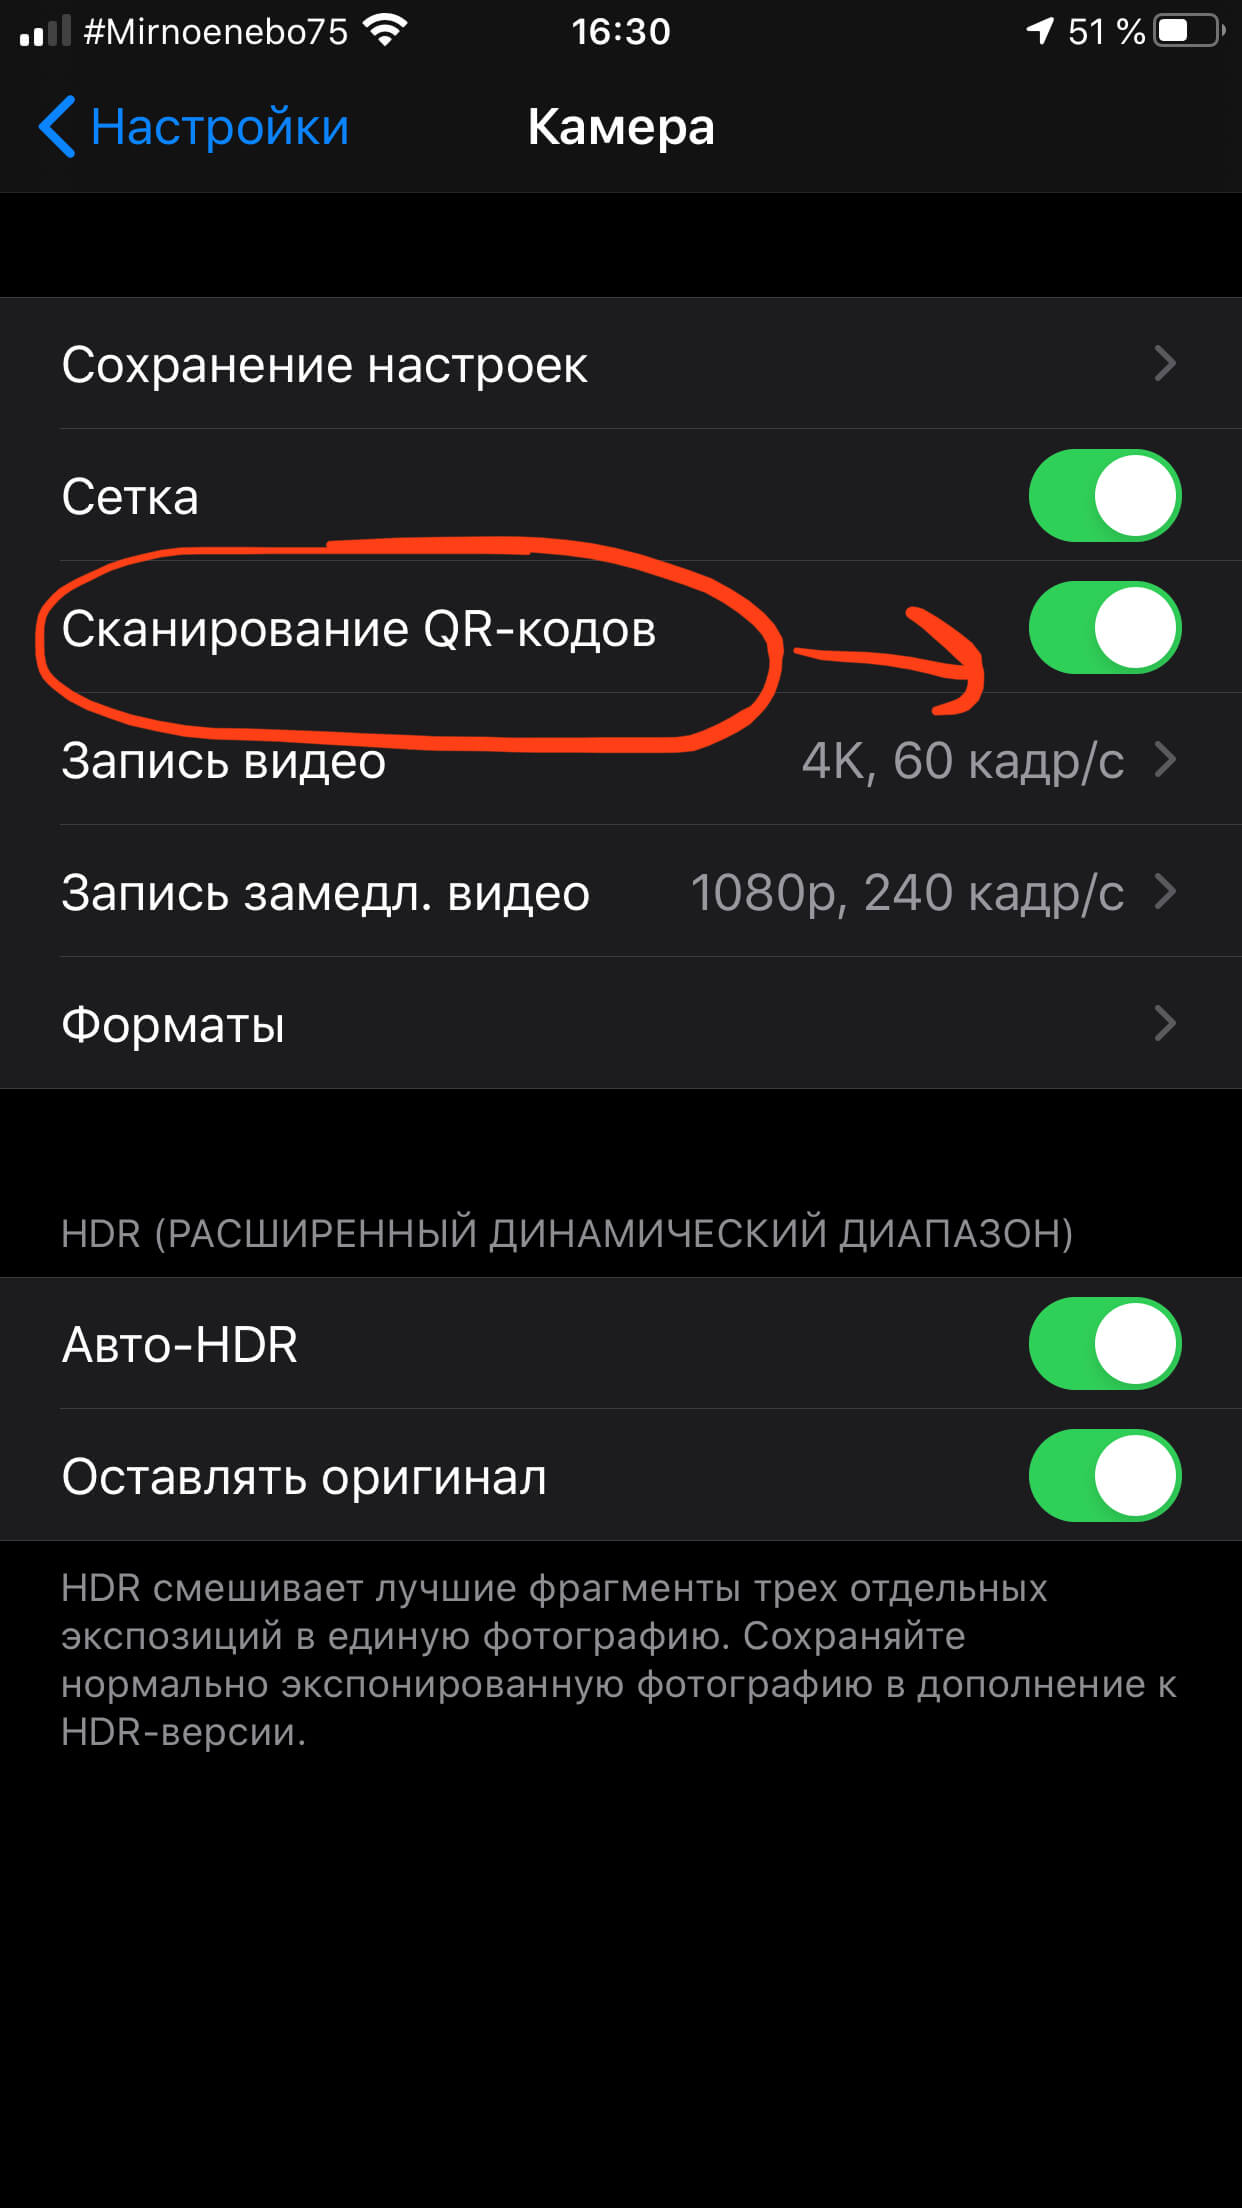 Яндекс qR сканер штрих кодов онлайн. Отсканировать и прочитать